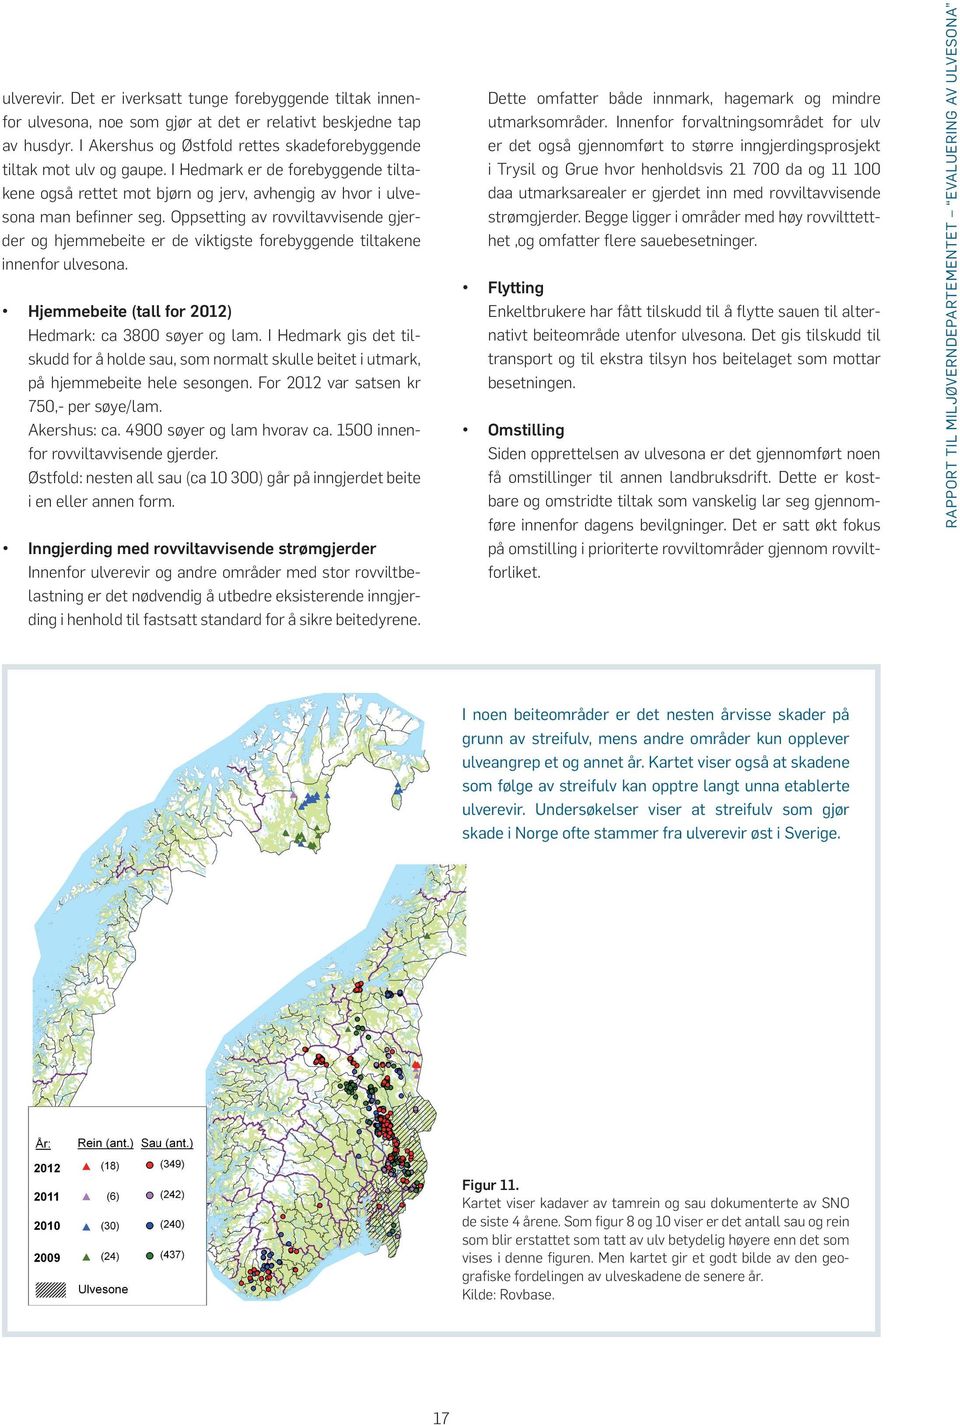 Oppsetting av rovviltavvisende gjerder og hjemmebeite er de viktigste forebyggende tiltakene innenfor ulvesona. Hjemmebeite (tall for 2012) Hedmark: ca 3800 søyer og lam.